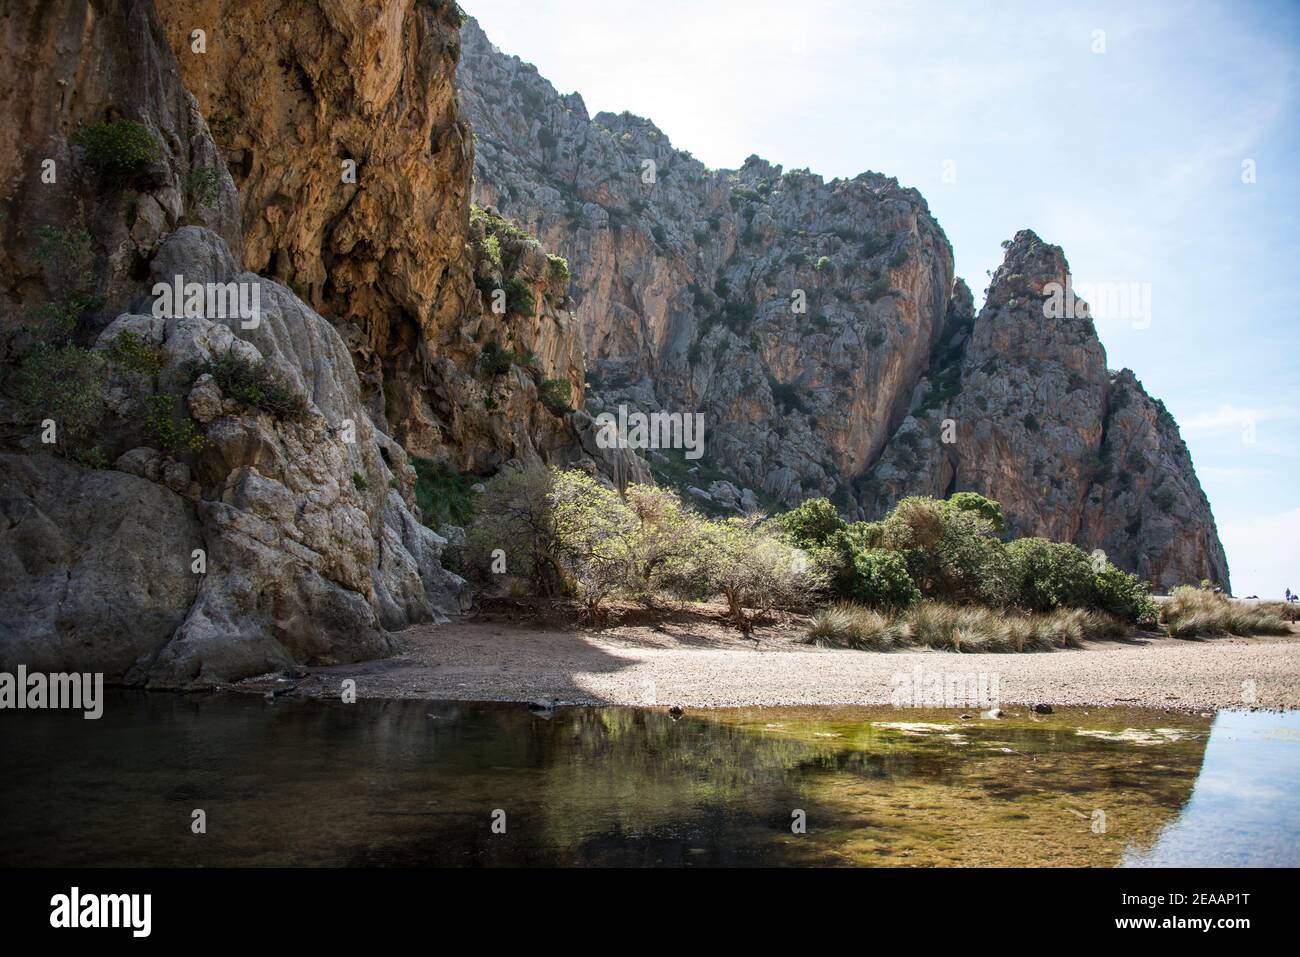 Torrent de Pareis gorge, Mallorca Stock Photo